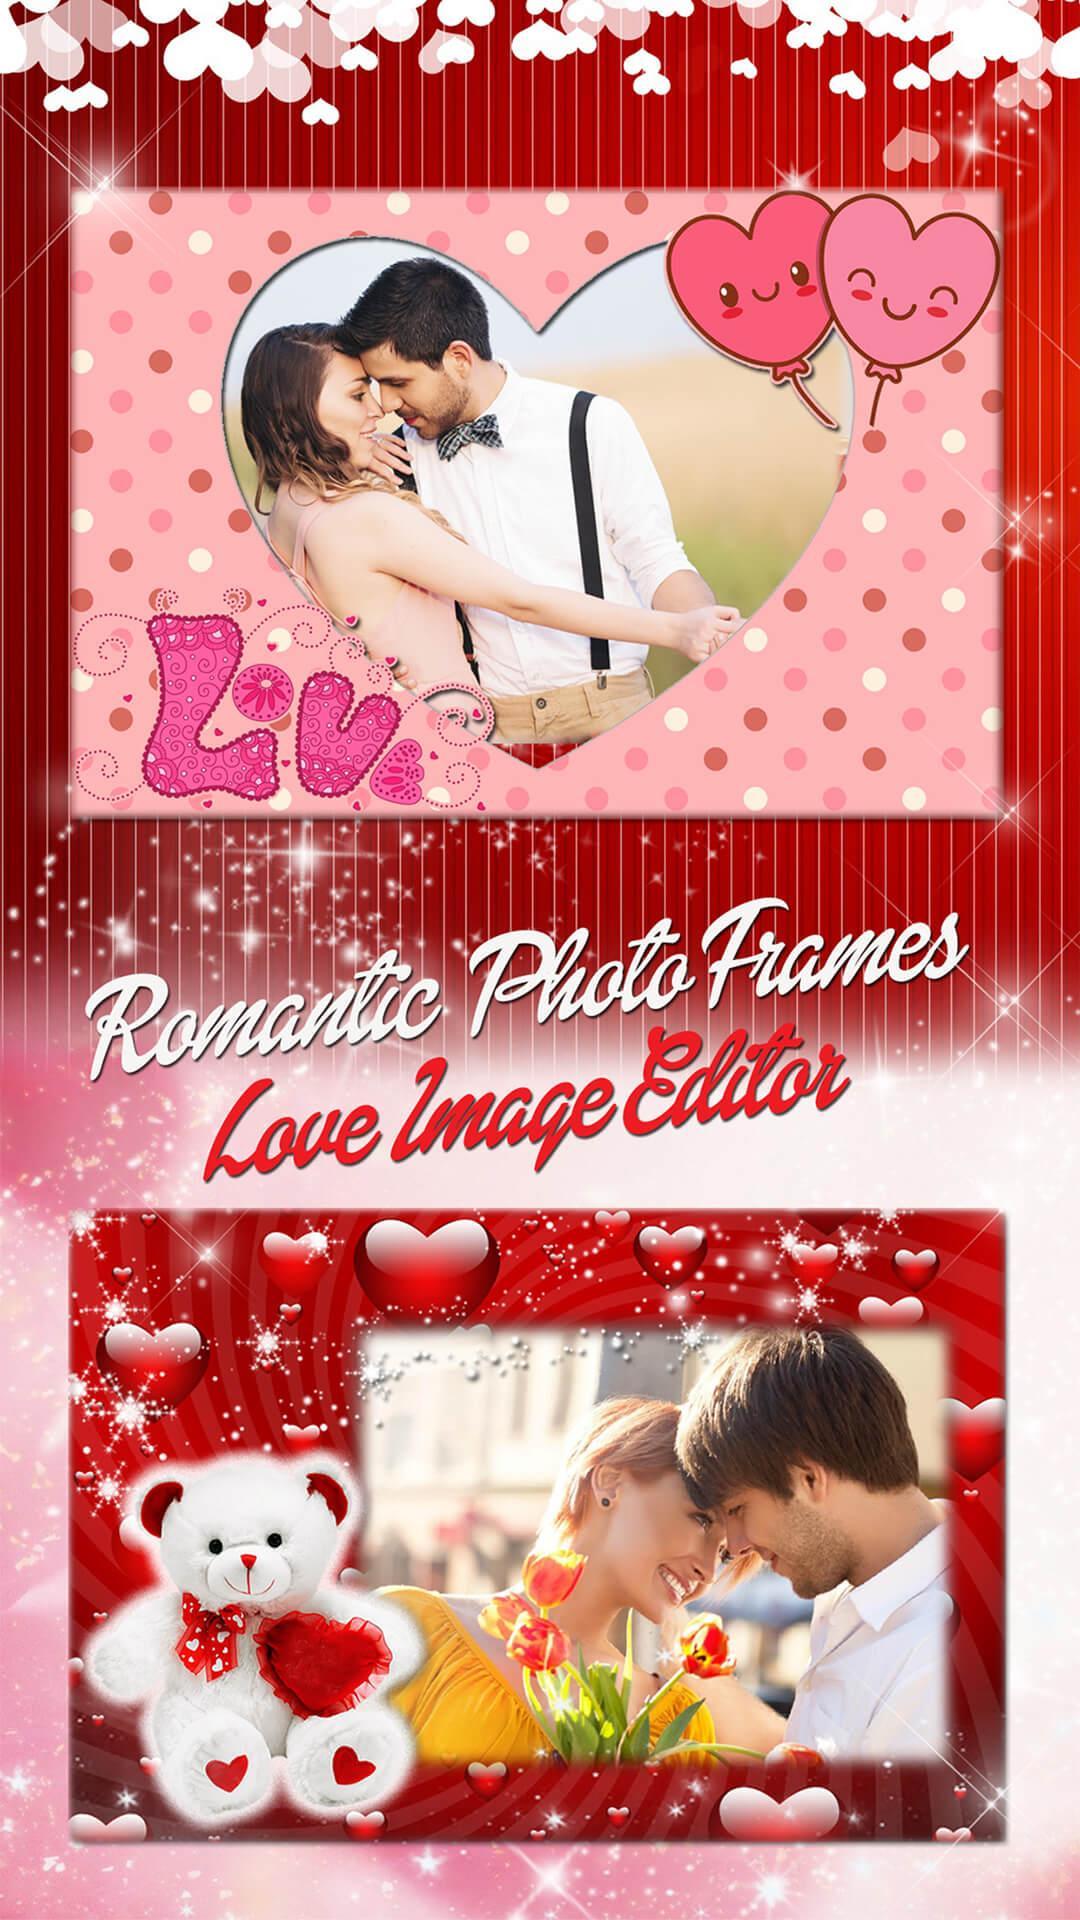 Verwonderend Fotolijst Liefde 💖 Romantische Foto's Bewerken for Android - APK HE-39